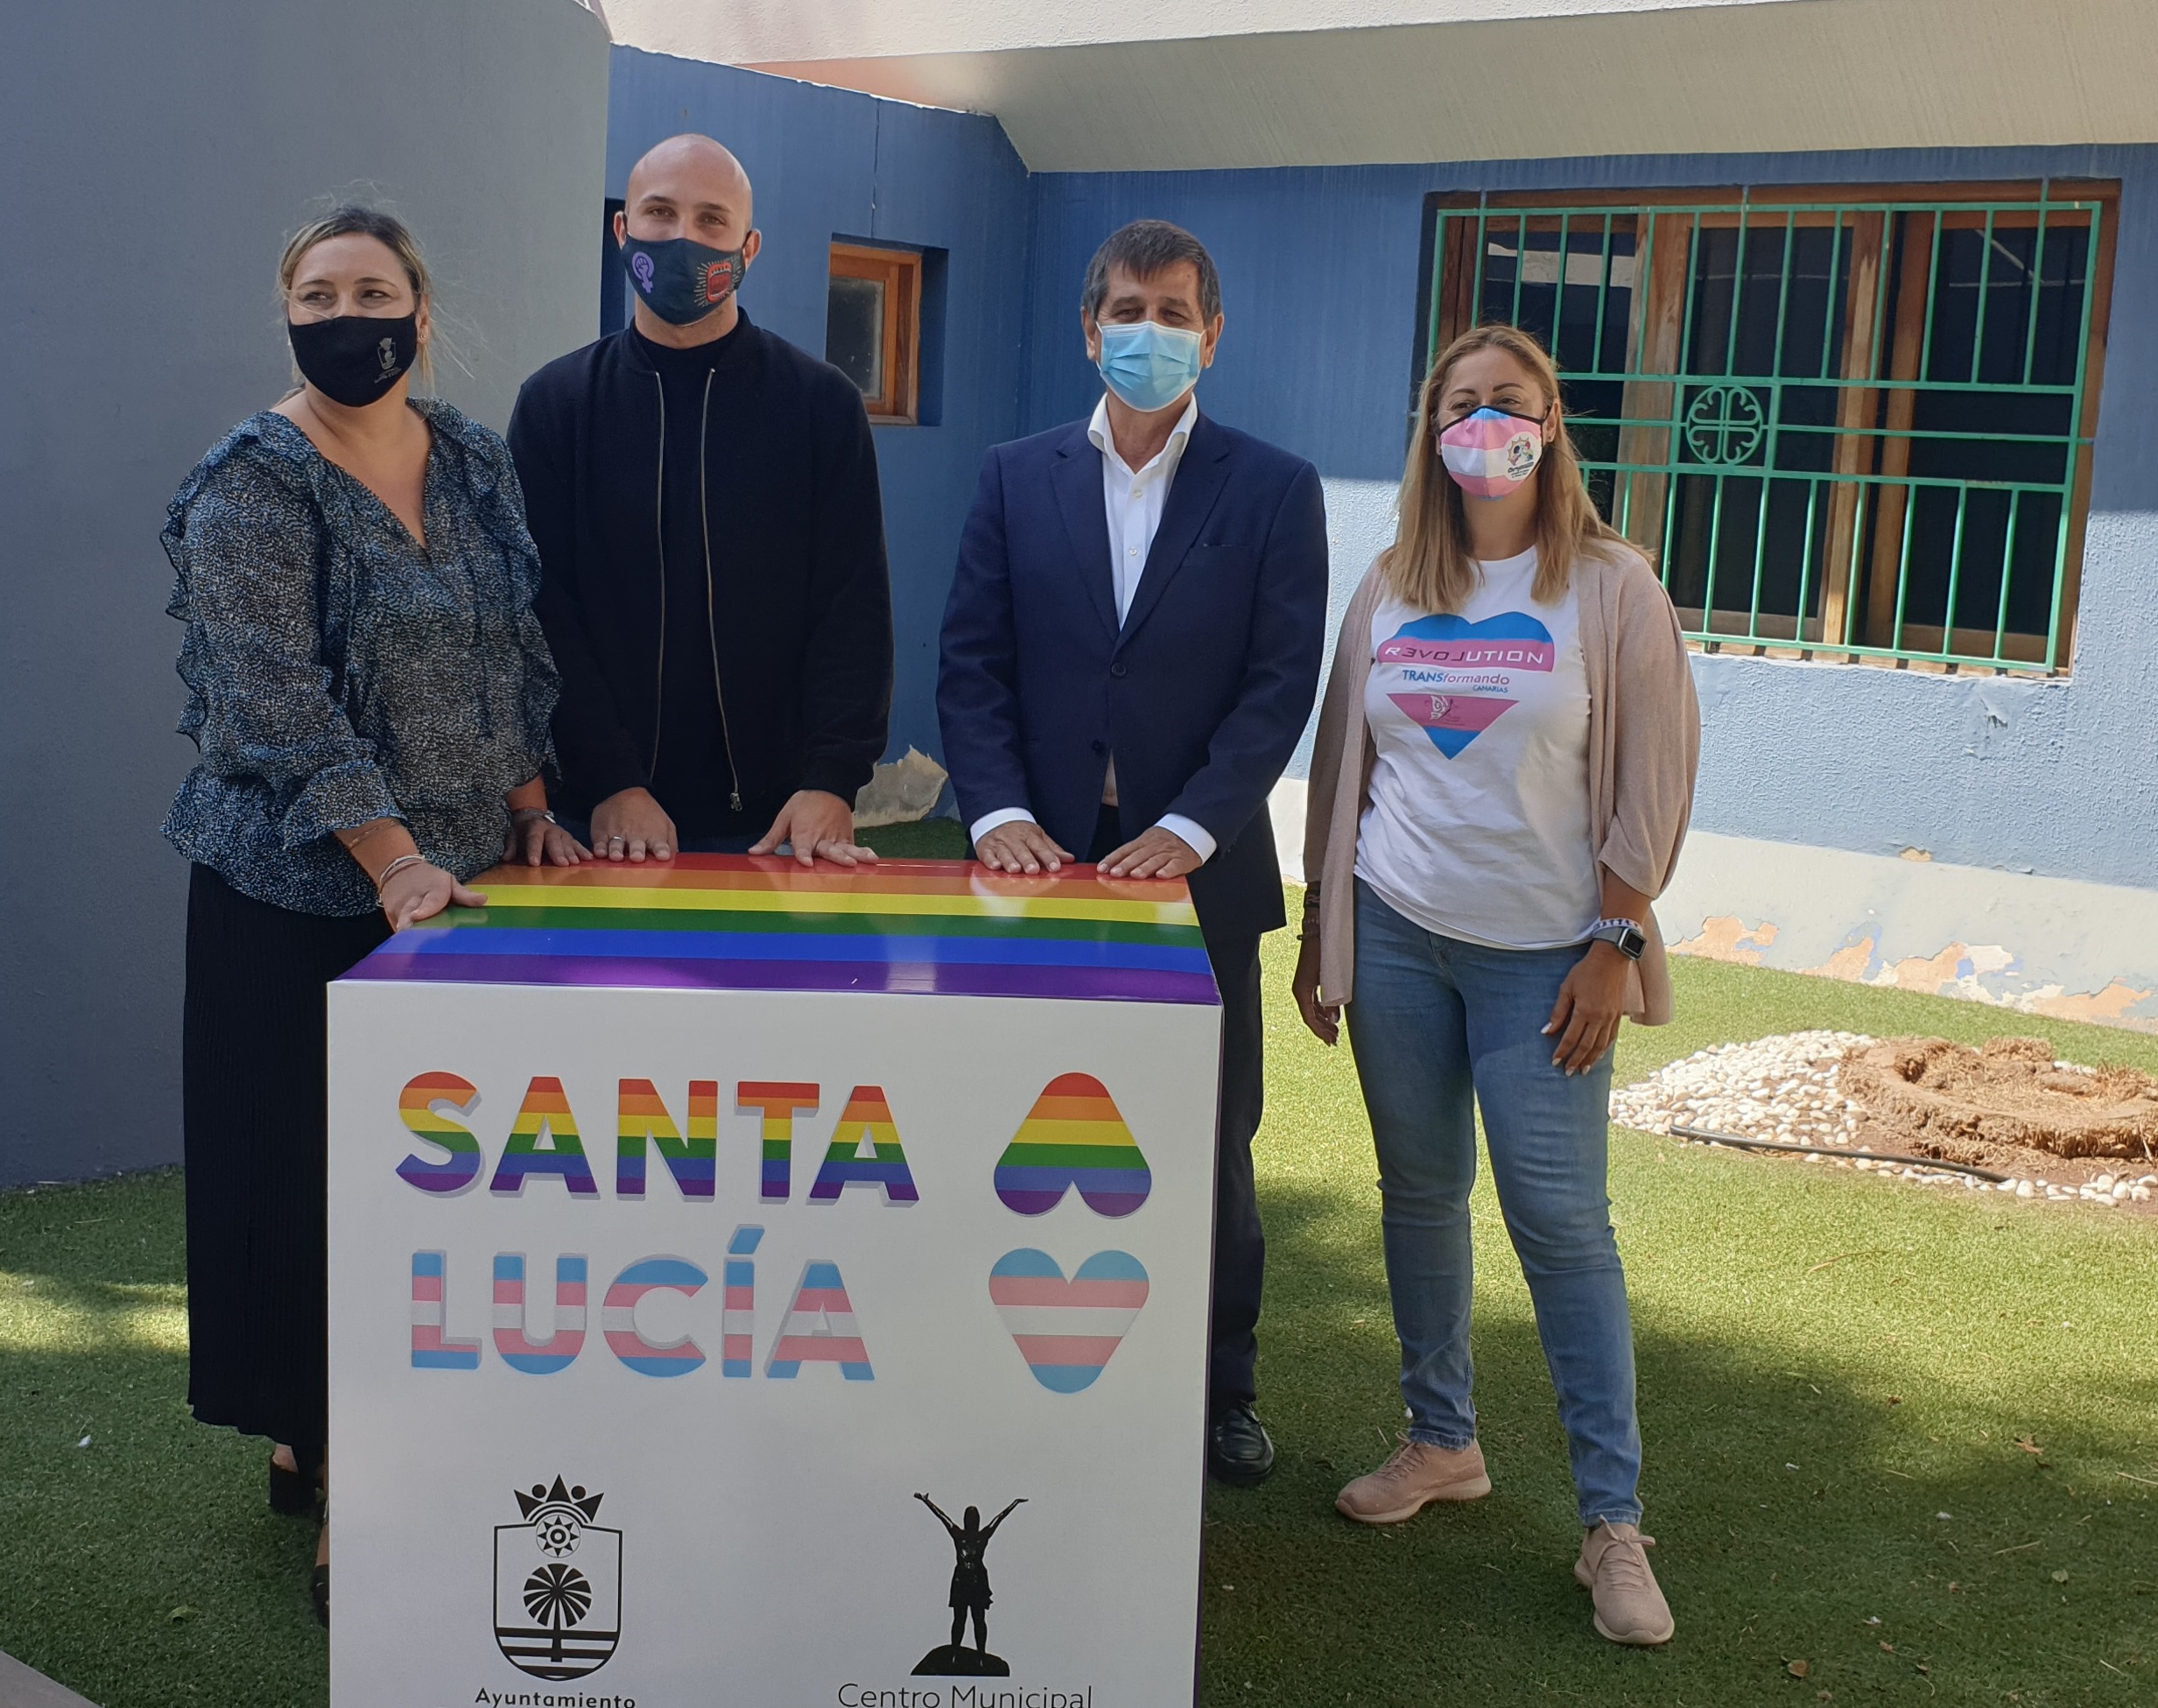  Las oficinas municipales, el teatro Víctor Jara, el Punto J. y Radio Tagoror se iluminan con los colores del orgullo para defender la diversidad  LGTBIQ+